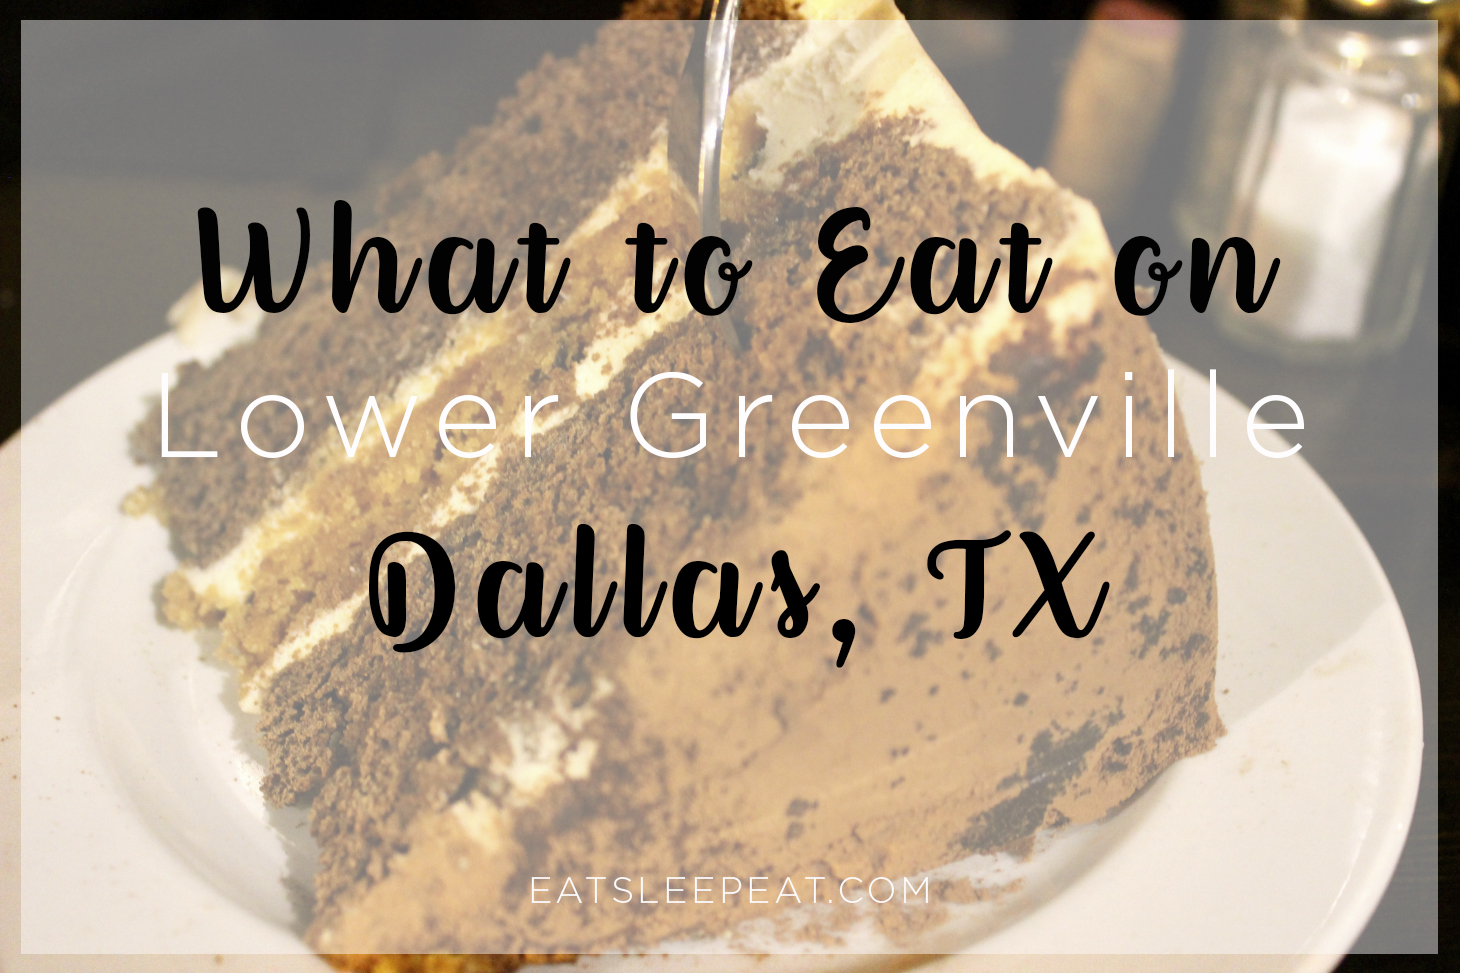 Dallas: Lower Greenville – Eat Sleep Eat